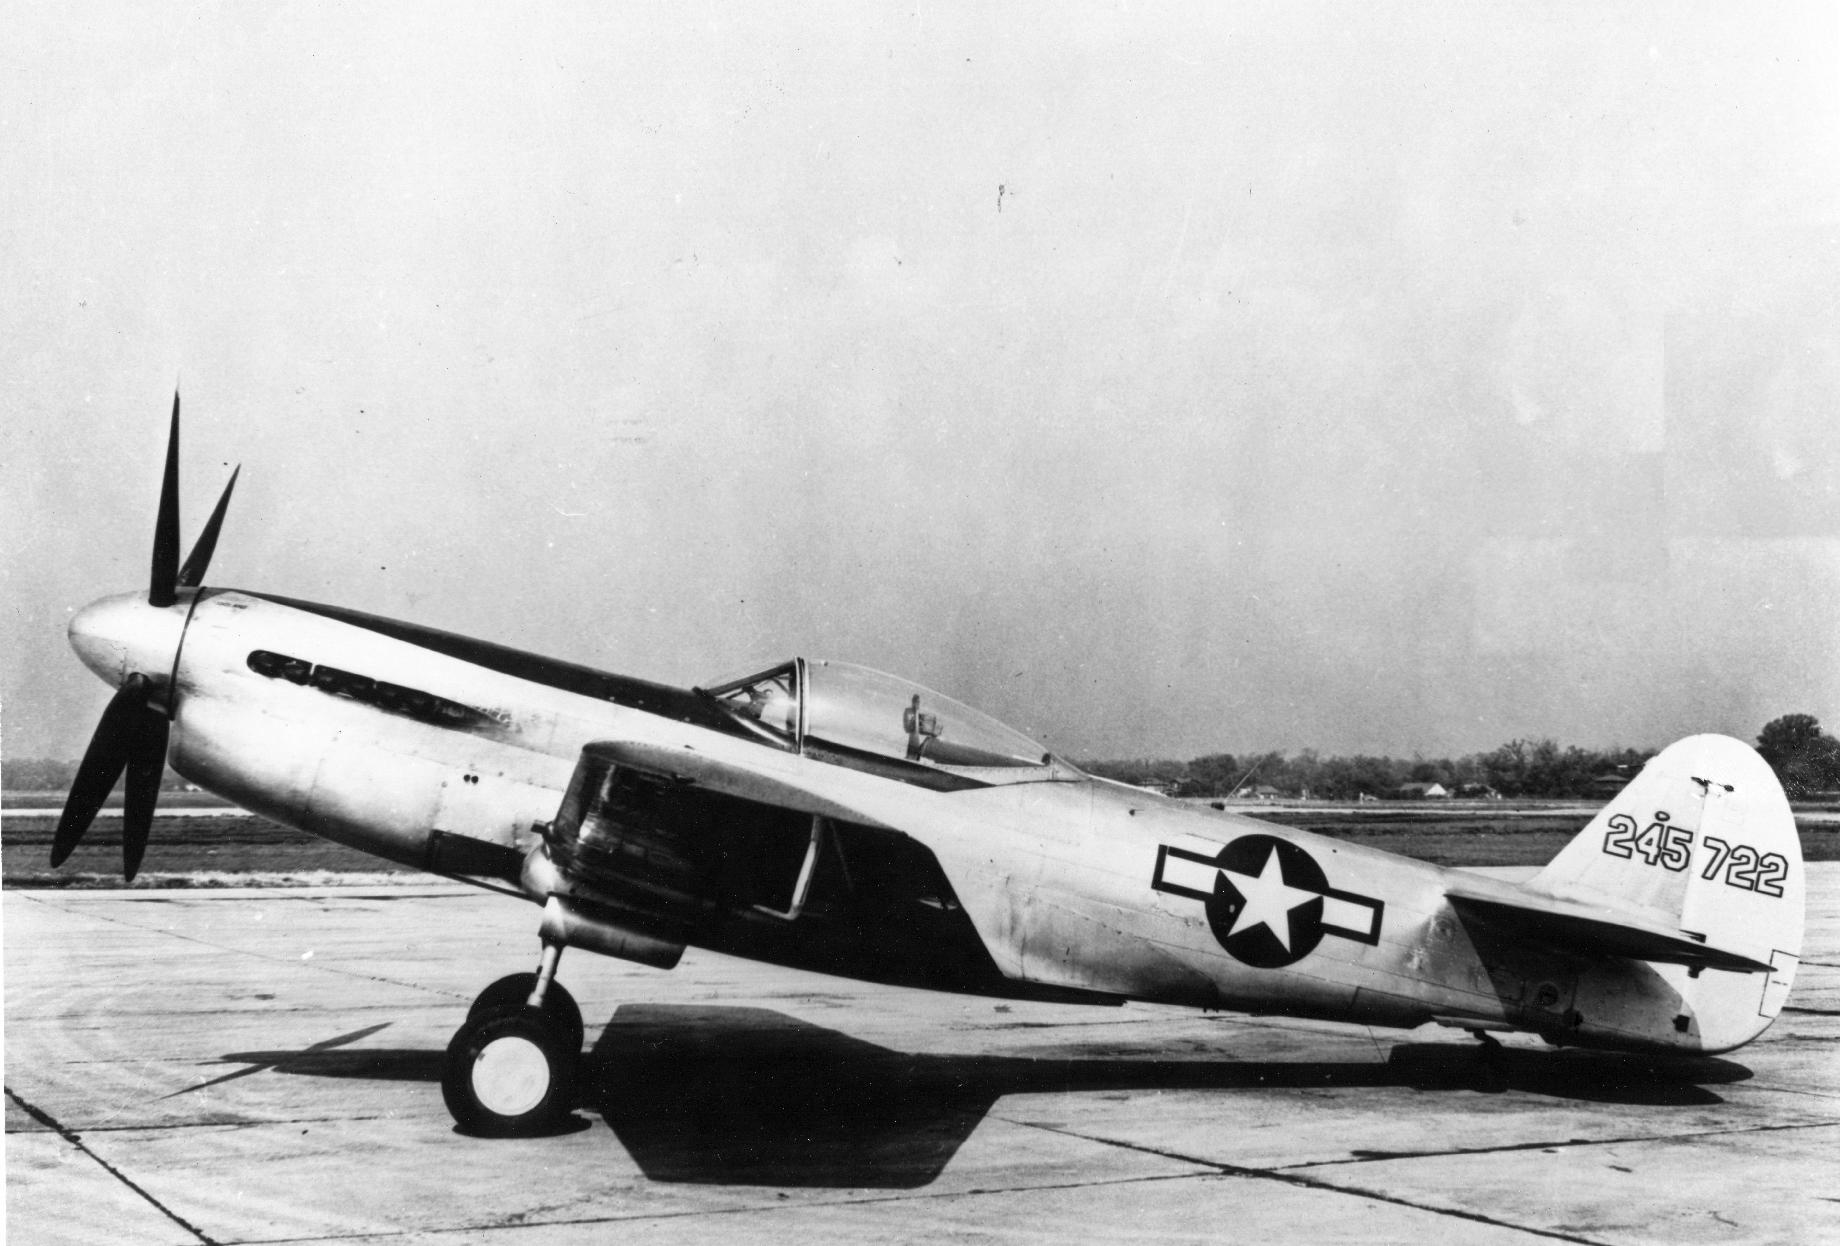 Curtiss_P-40Q